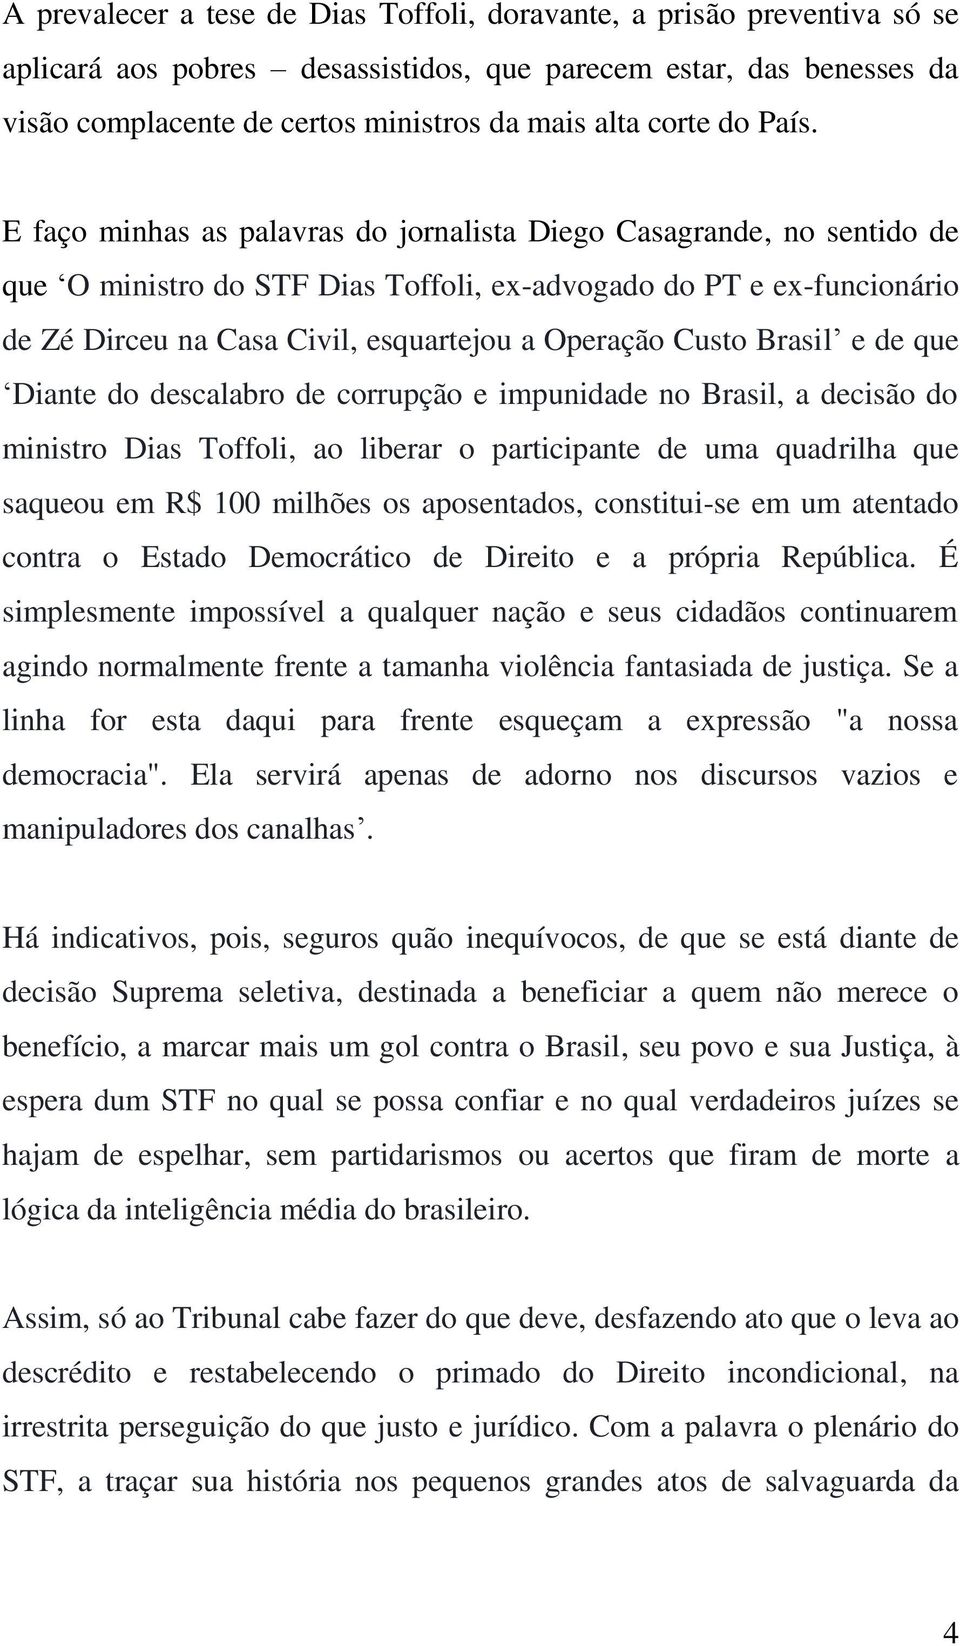 E faço minhas as palavras do jornalista Diego Casagrande, no sentido de que O ministro do STF Dias Toffoli, ex-advogado do PT e ex-funcionário de Zé Dirceu na Casa Civil, esquartejou a Operação Custo